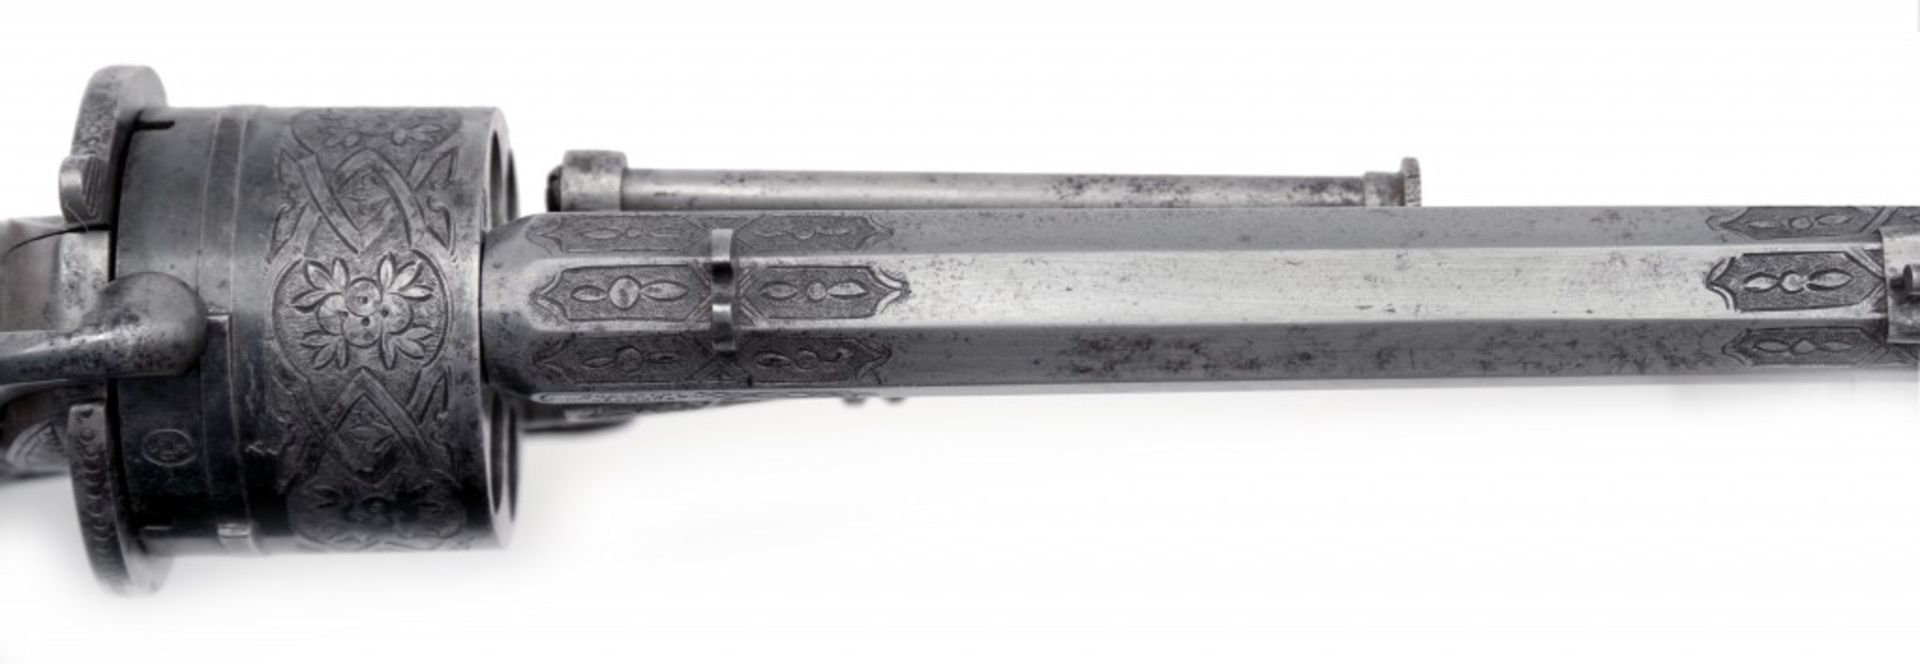 A Chamelot & Delvigne pin fire revolver - Image 3 of 3